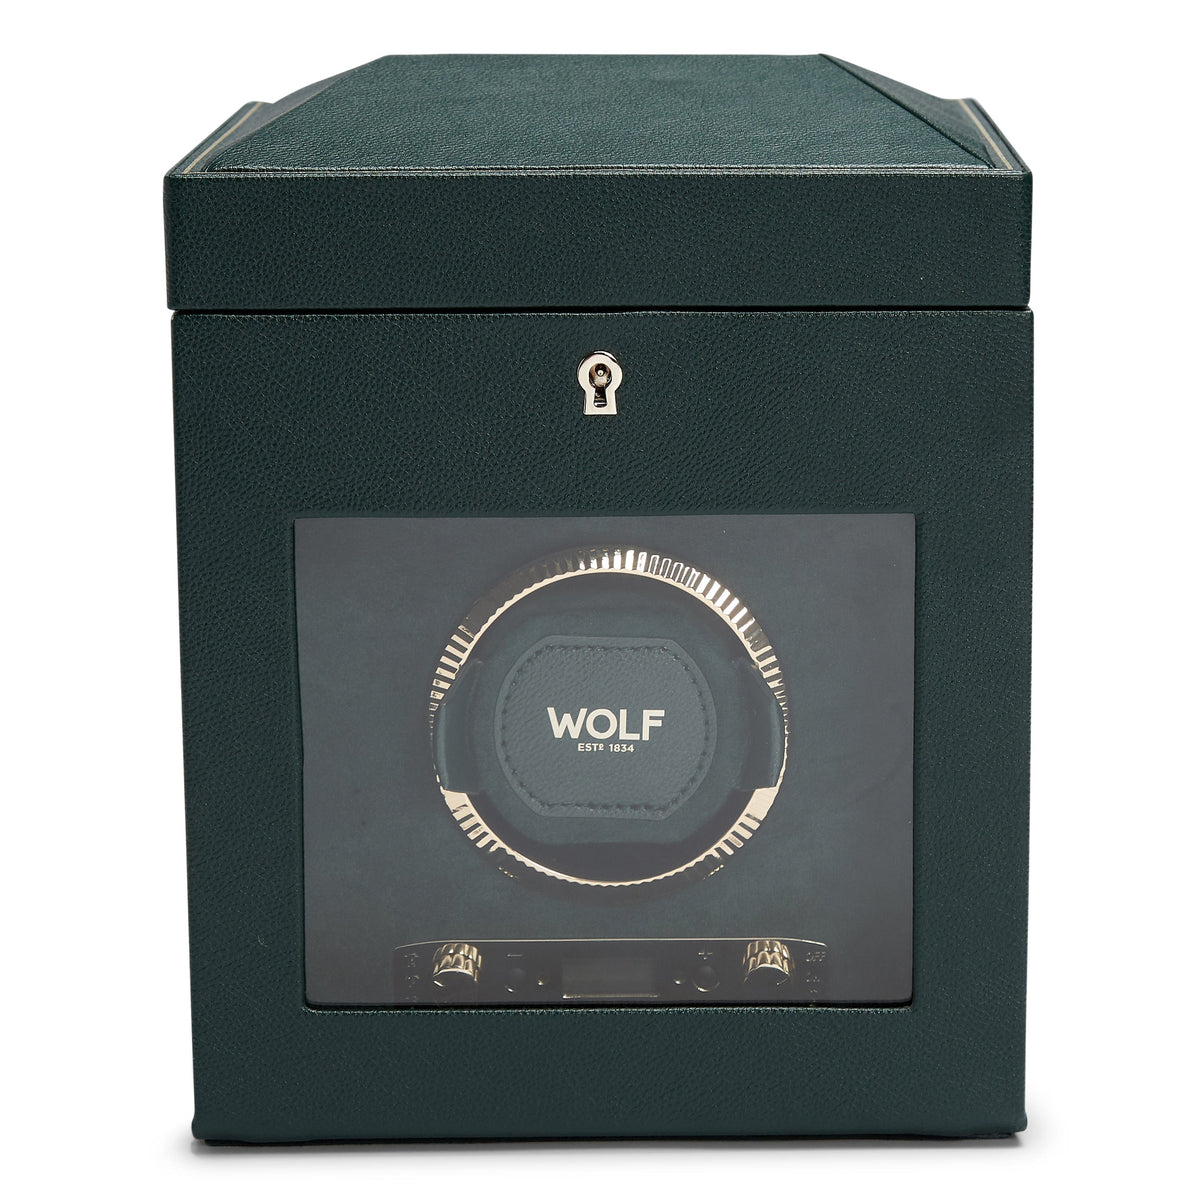 Wolf1834 Watch Winder British Racing Single Watch Winder with Storage-Green